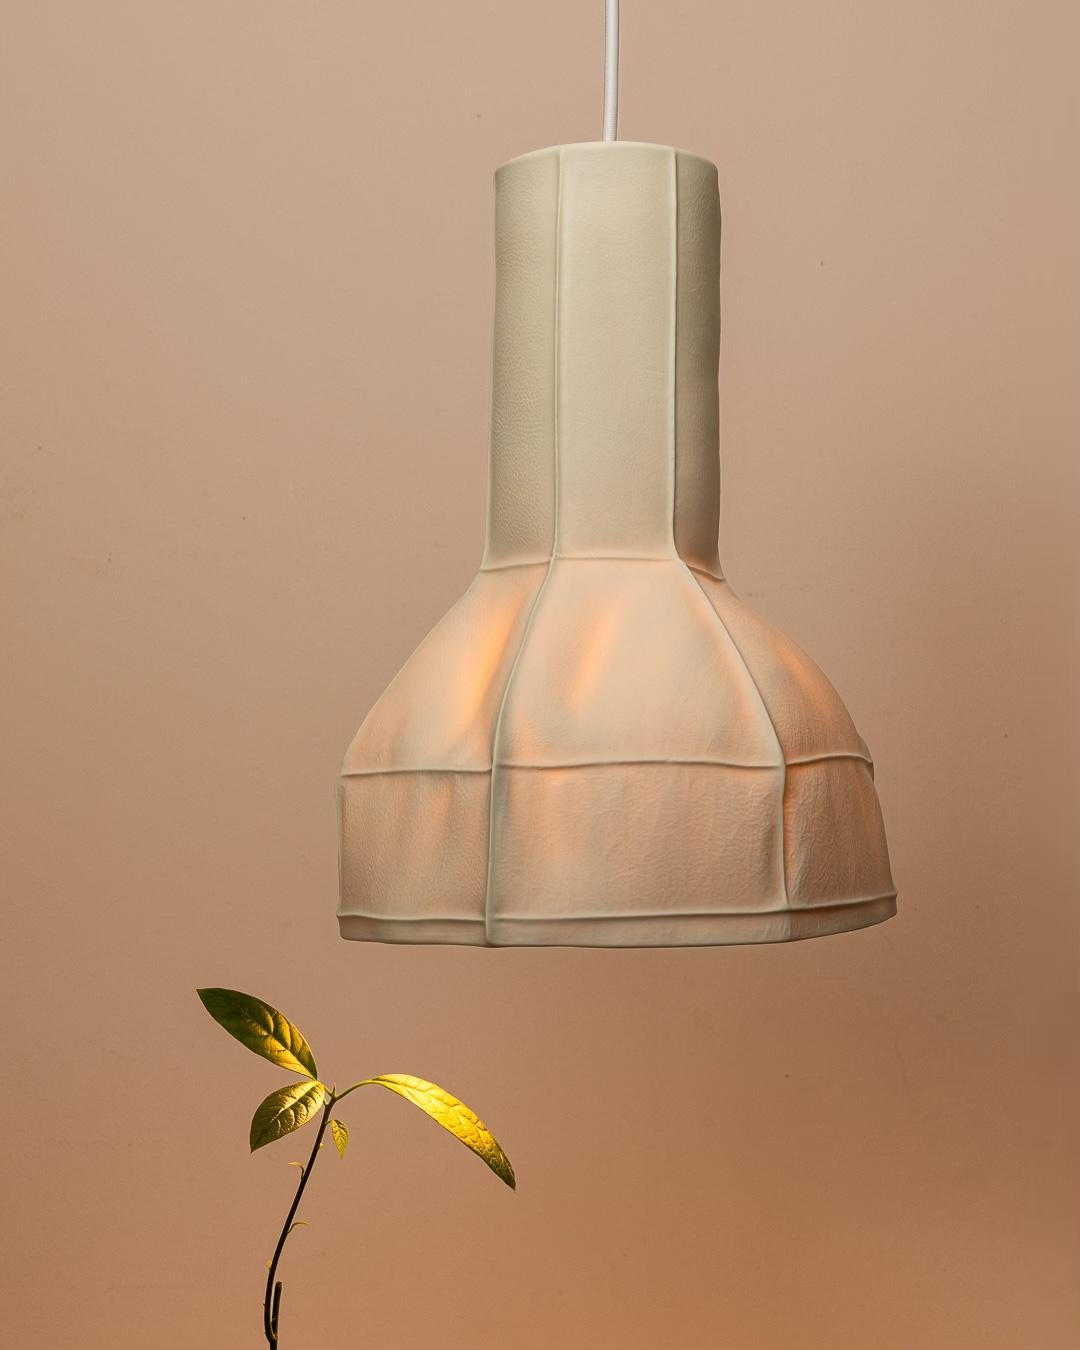 Série Kawa Light 05 Lampe à suspension par Luft Tanaka Studio

Suspension en porcelaine tactile et texturée à la forme unique et organique. Le diffuseur en porcelaine translucide projette une lueur de couleur chaude, parfaite pour une salle à manger